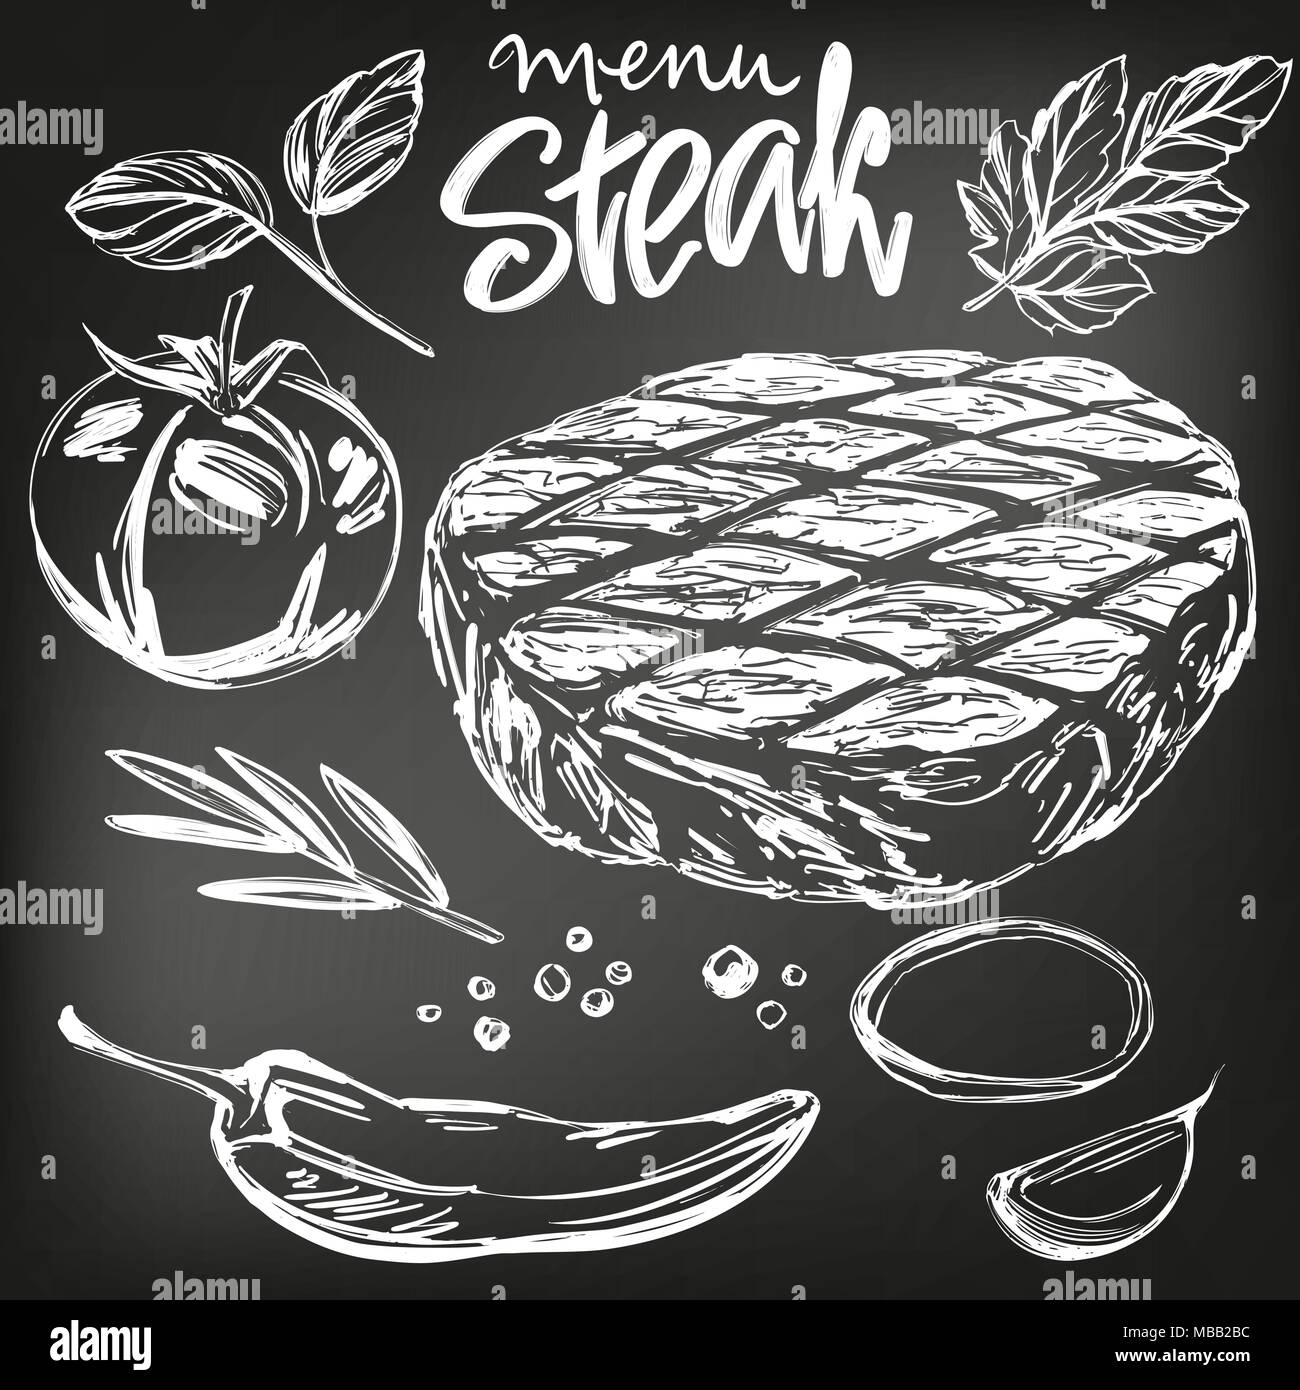 Carne alimentare, bistecche arrosto, set di vegetali, disegnati a mano illustrazione vettoriale realistico disegno , disegnati in gesso su una lavagna nera Illustrazione Vettoriale